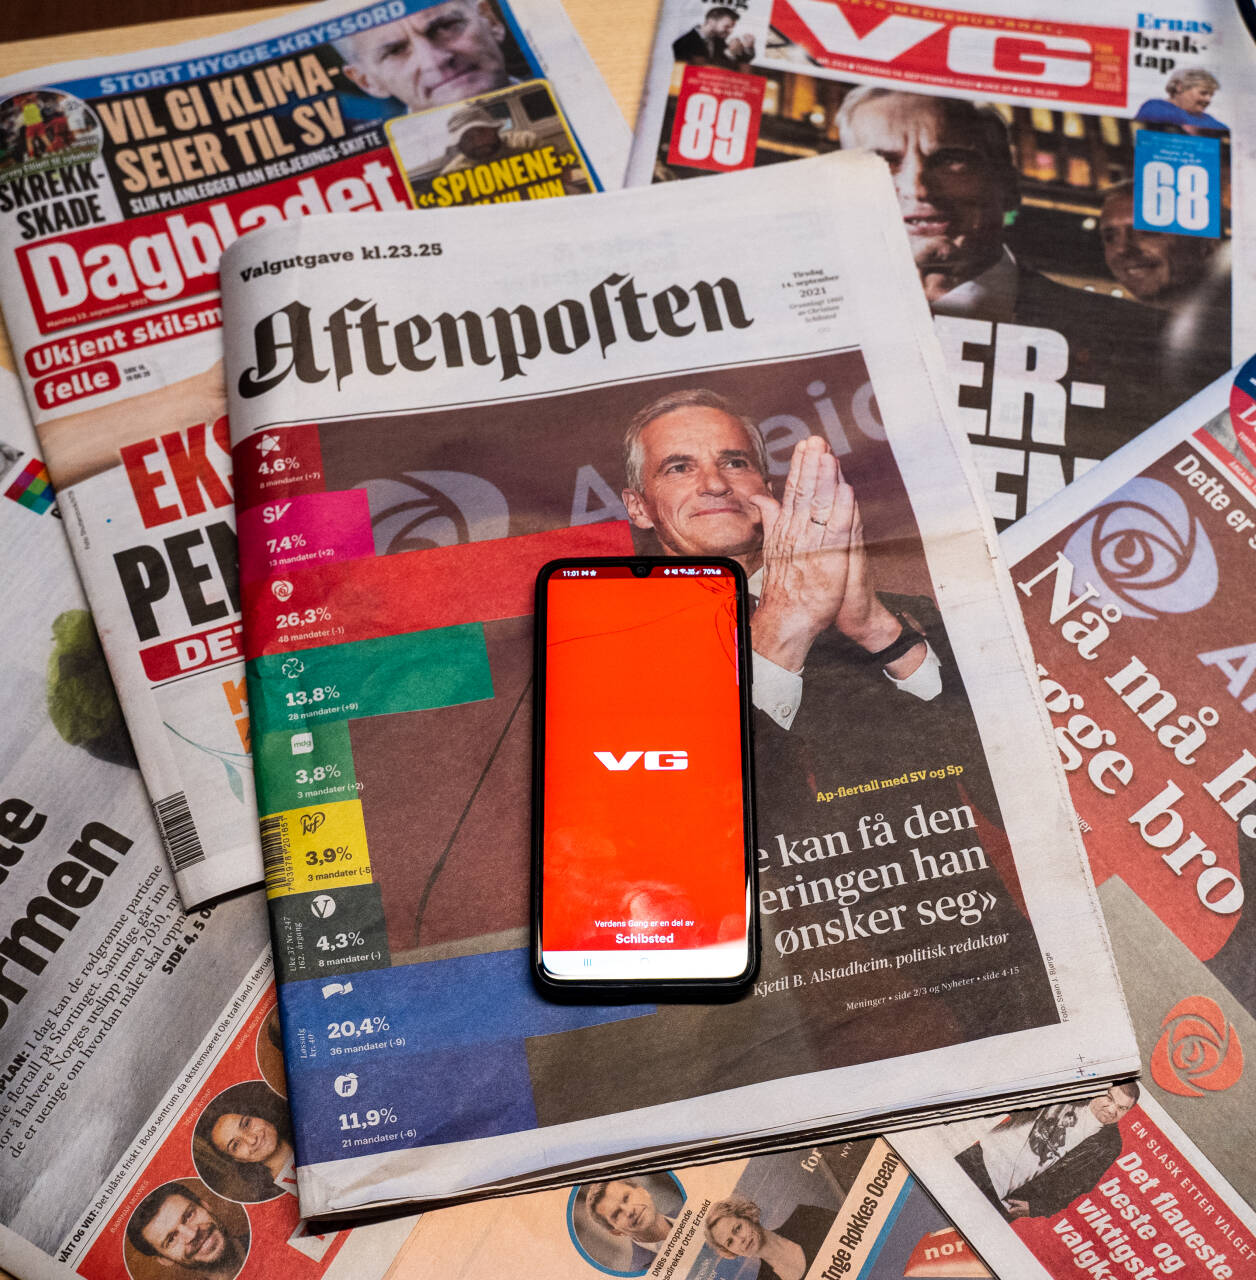 VG er Norges mest leste mediehus og er den digitale avisen med flest lesere, mens Aftenposten er største papiravis.Foto: Ali Zare / NTB